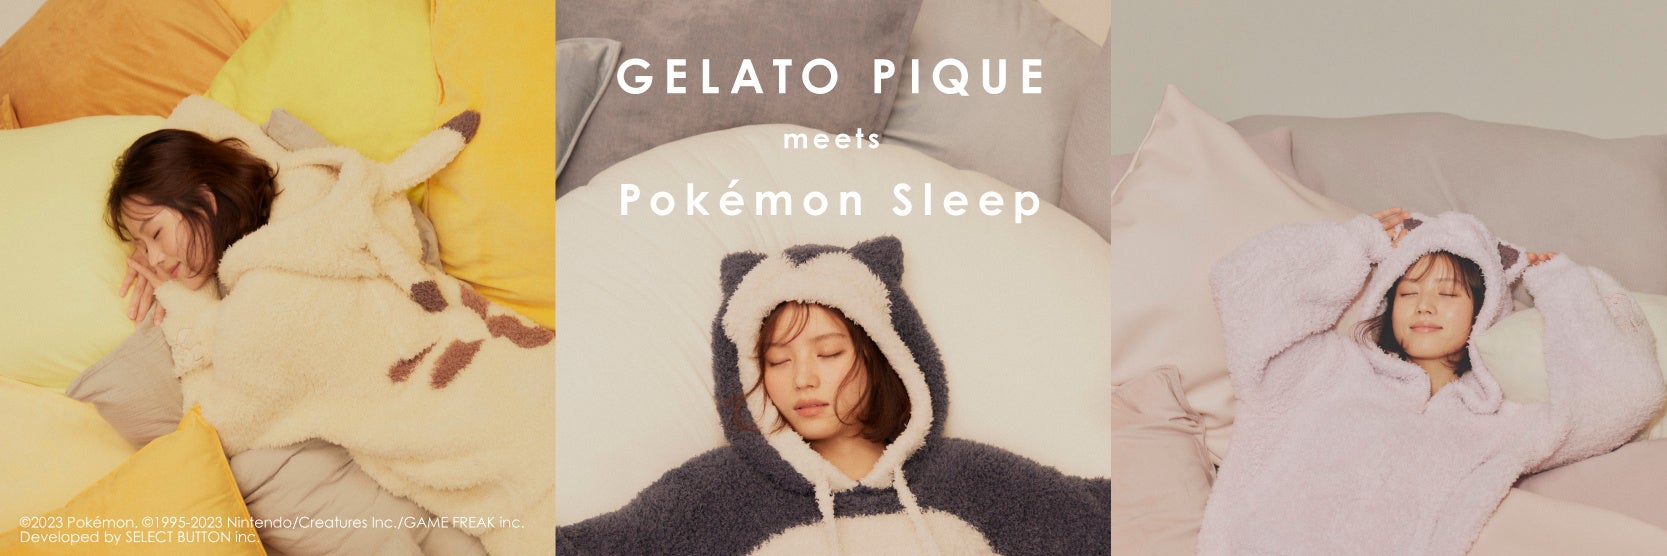 ₢킹ɂwGELATO PIQUE meets Pokemon Sleepi|PX[vjxꕔACe̒ǉYI